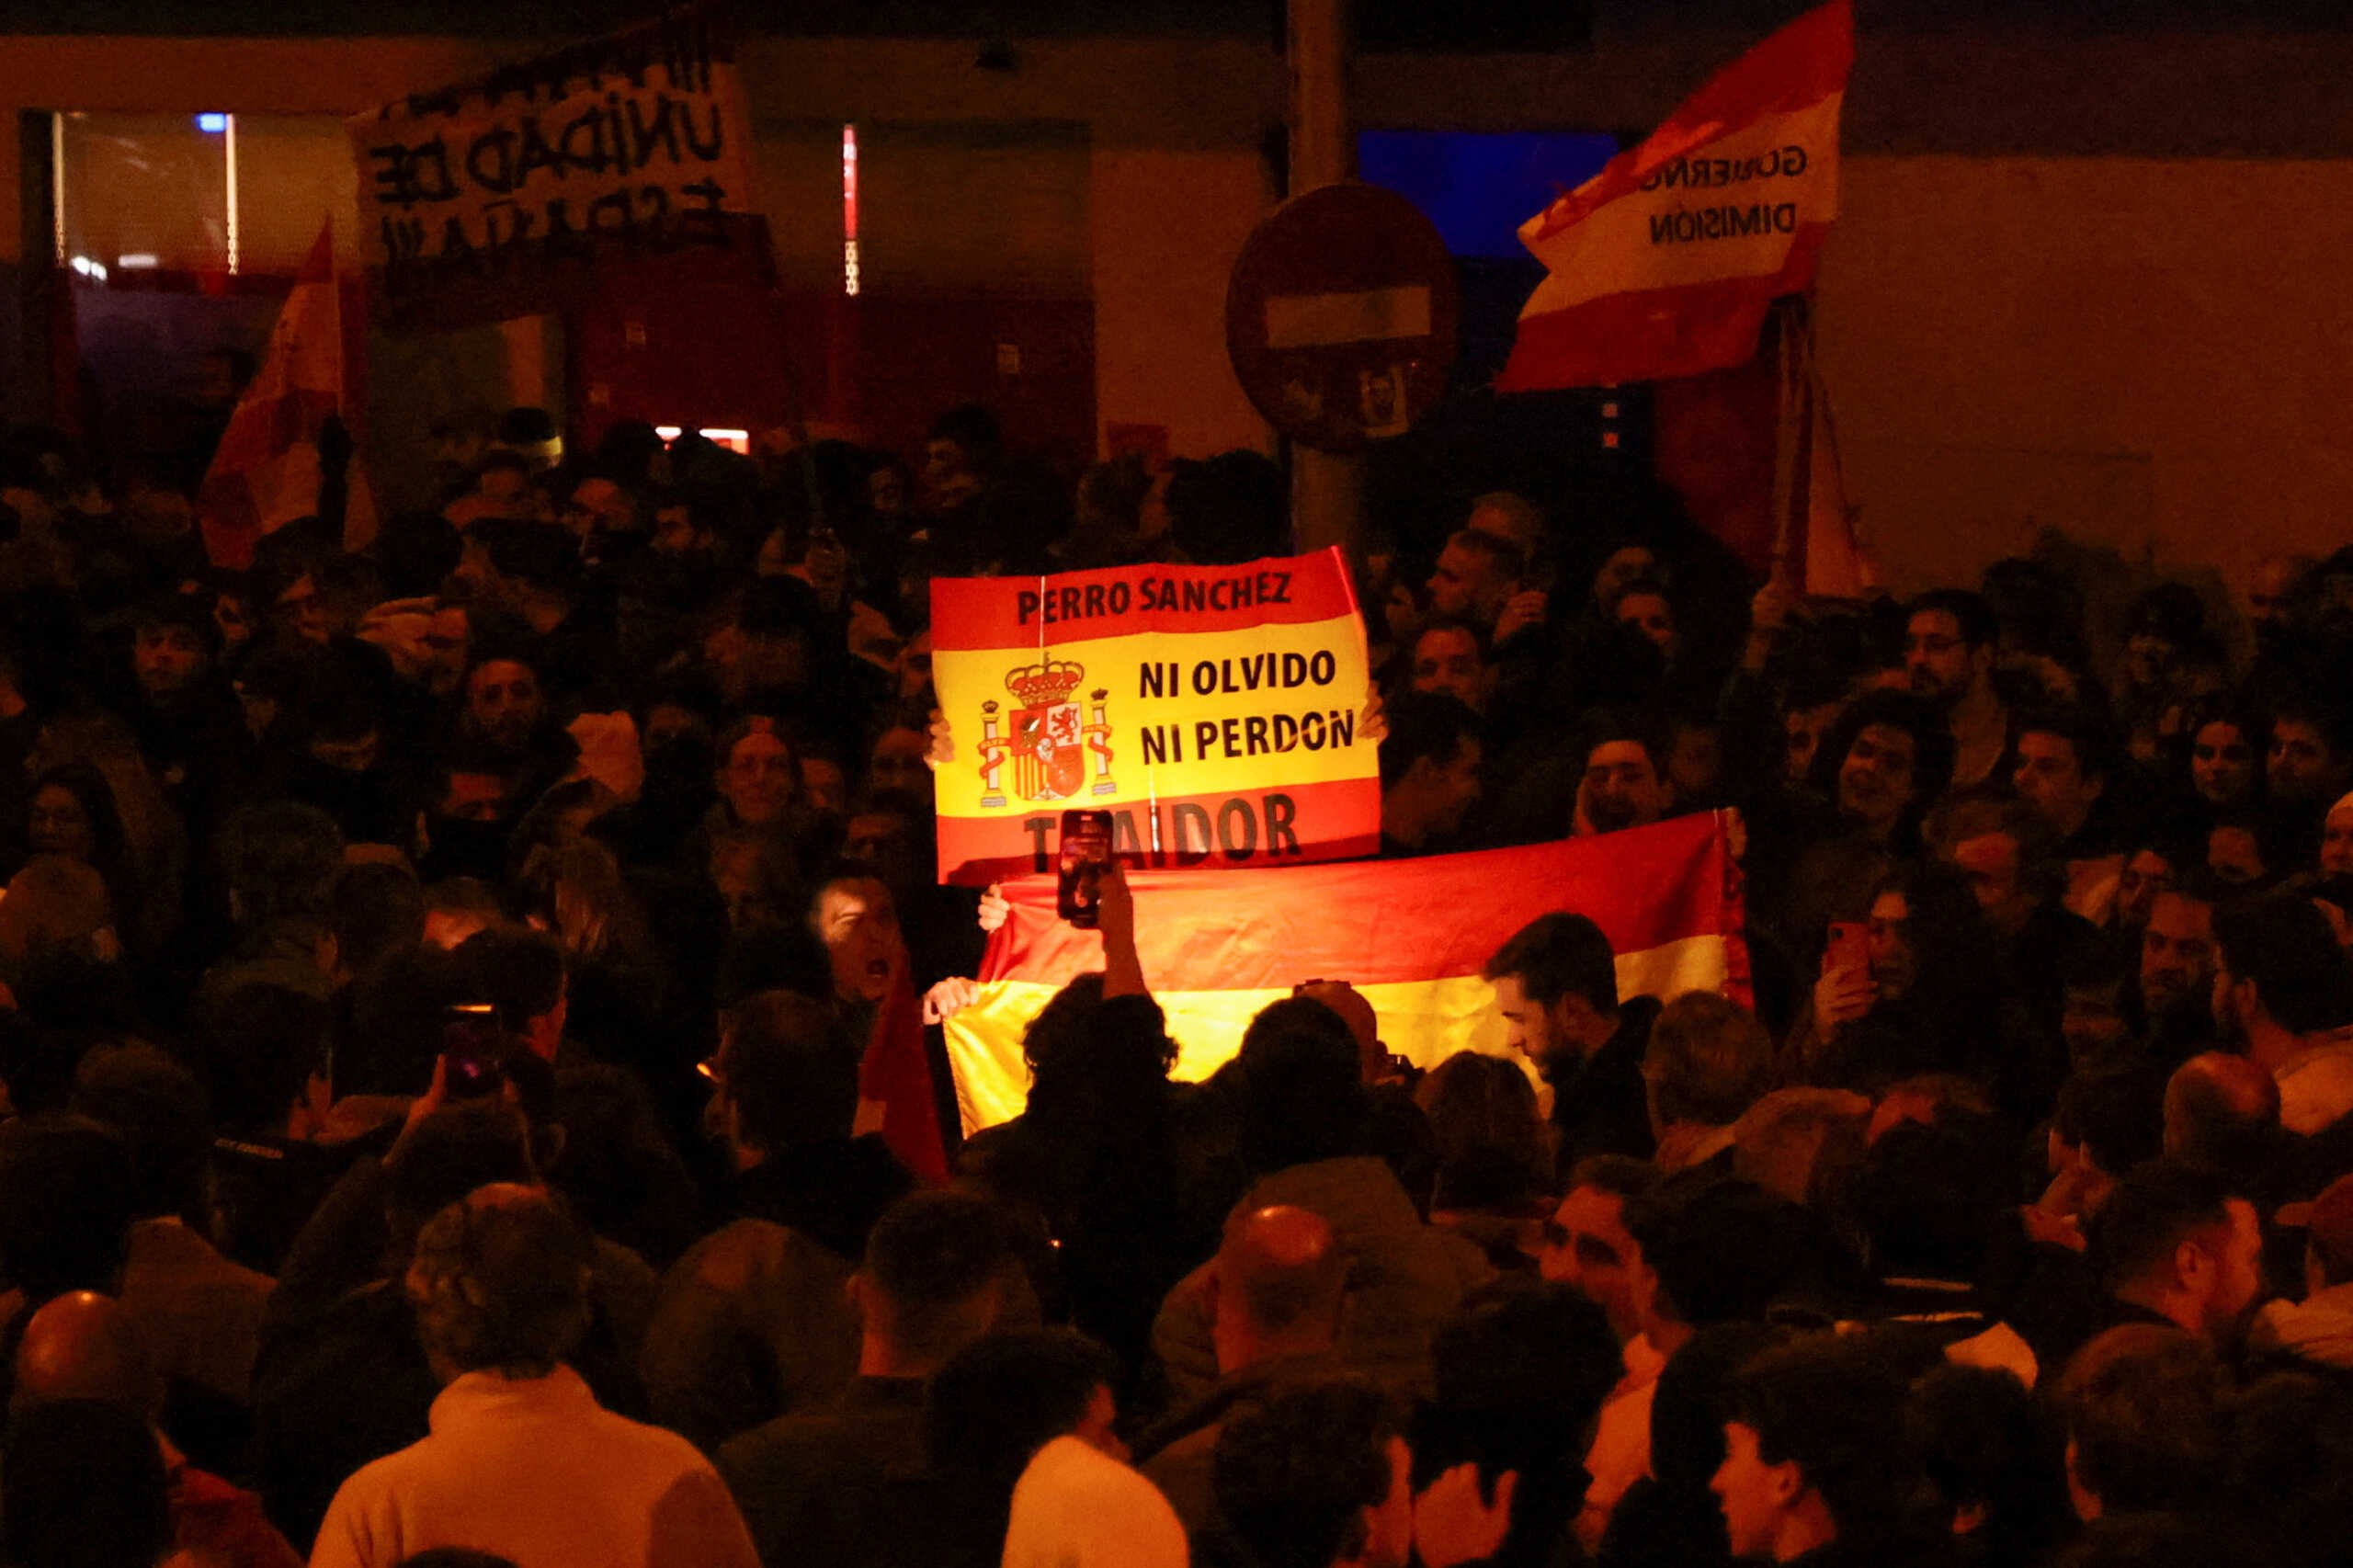 Ισπανία: Κατέληξαν σε συμφωνία οι Σοσιαλιστές και το αυτονομιστικό κόμμα Καταλονίας